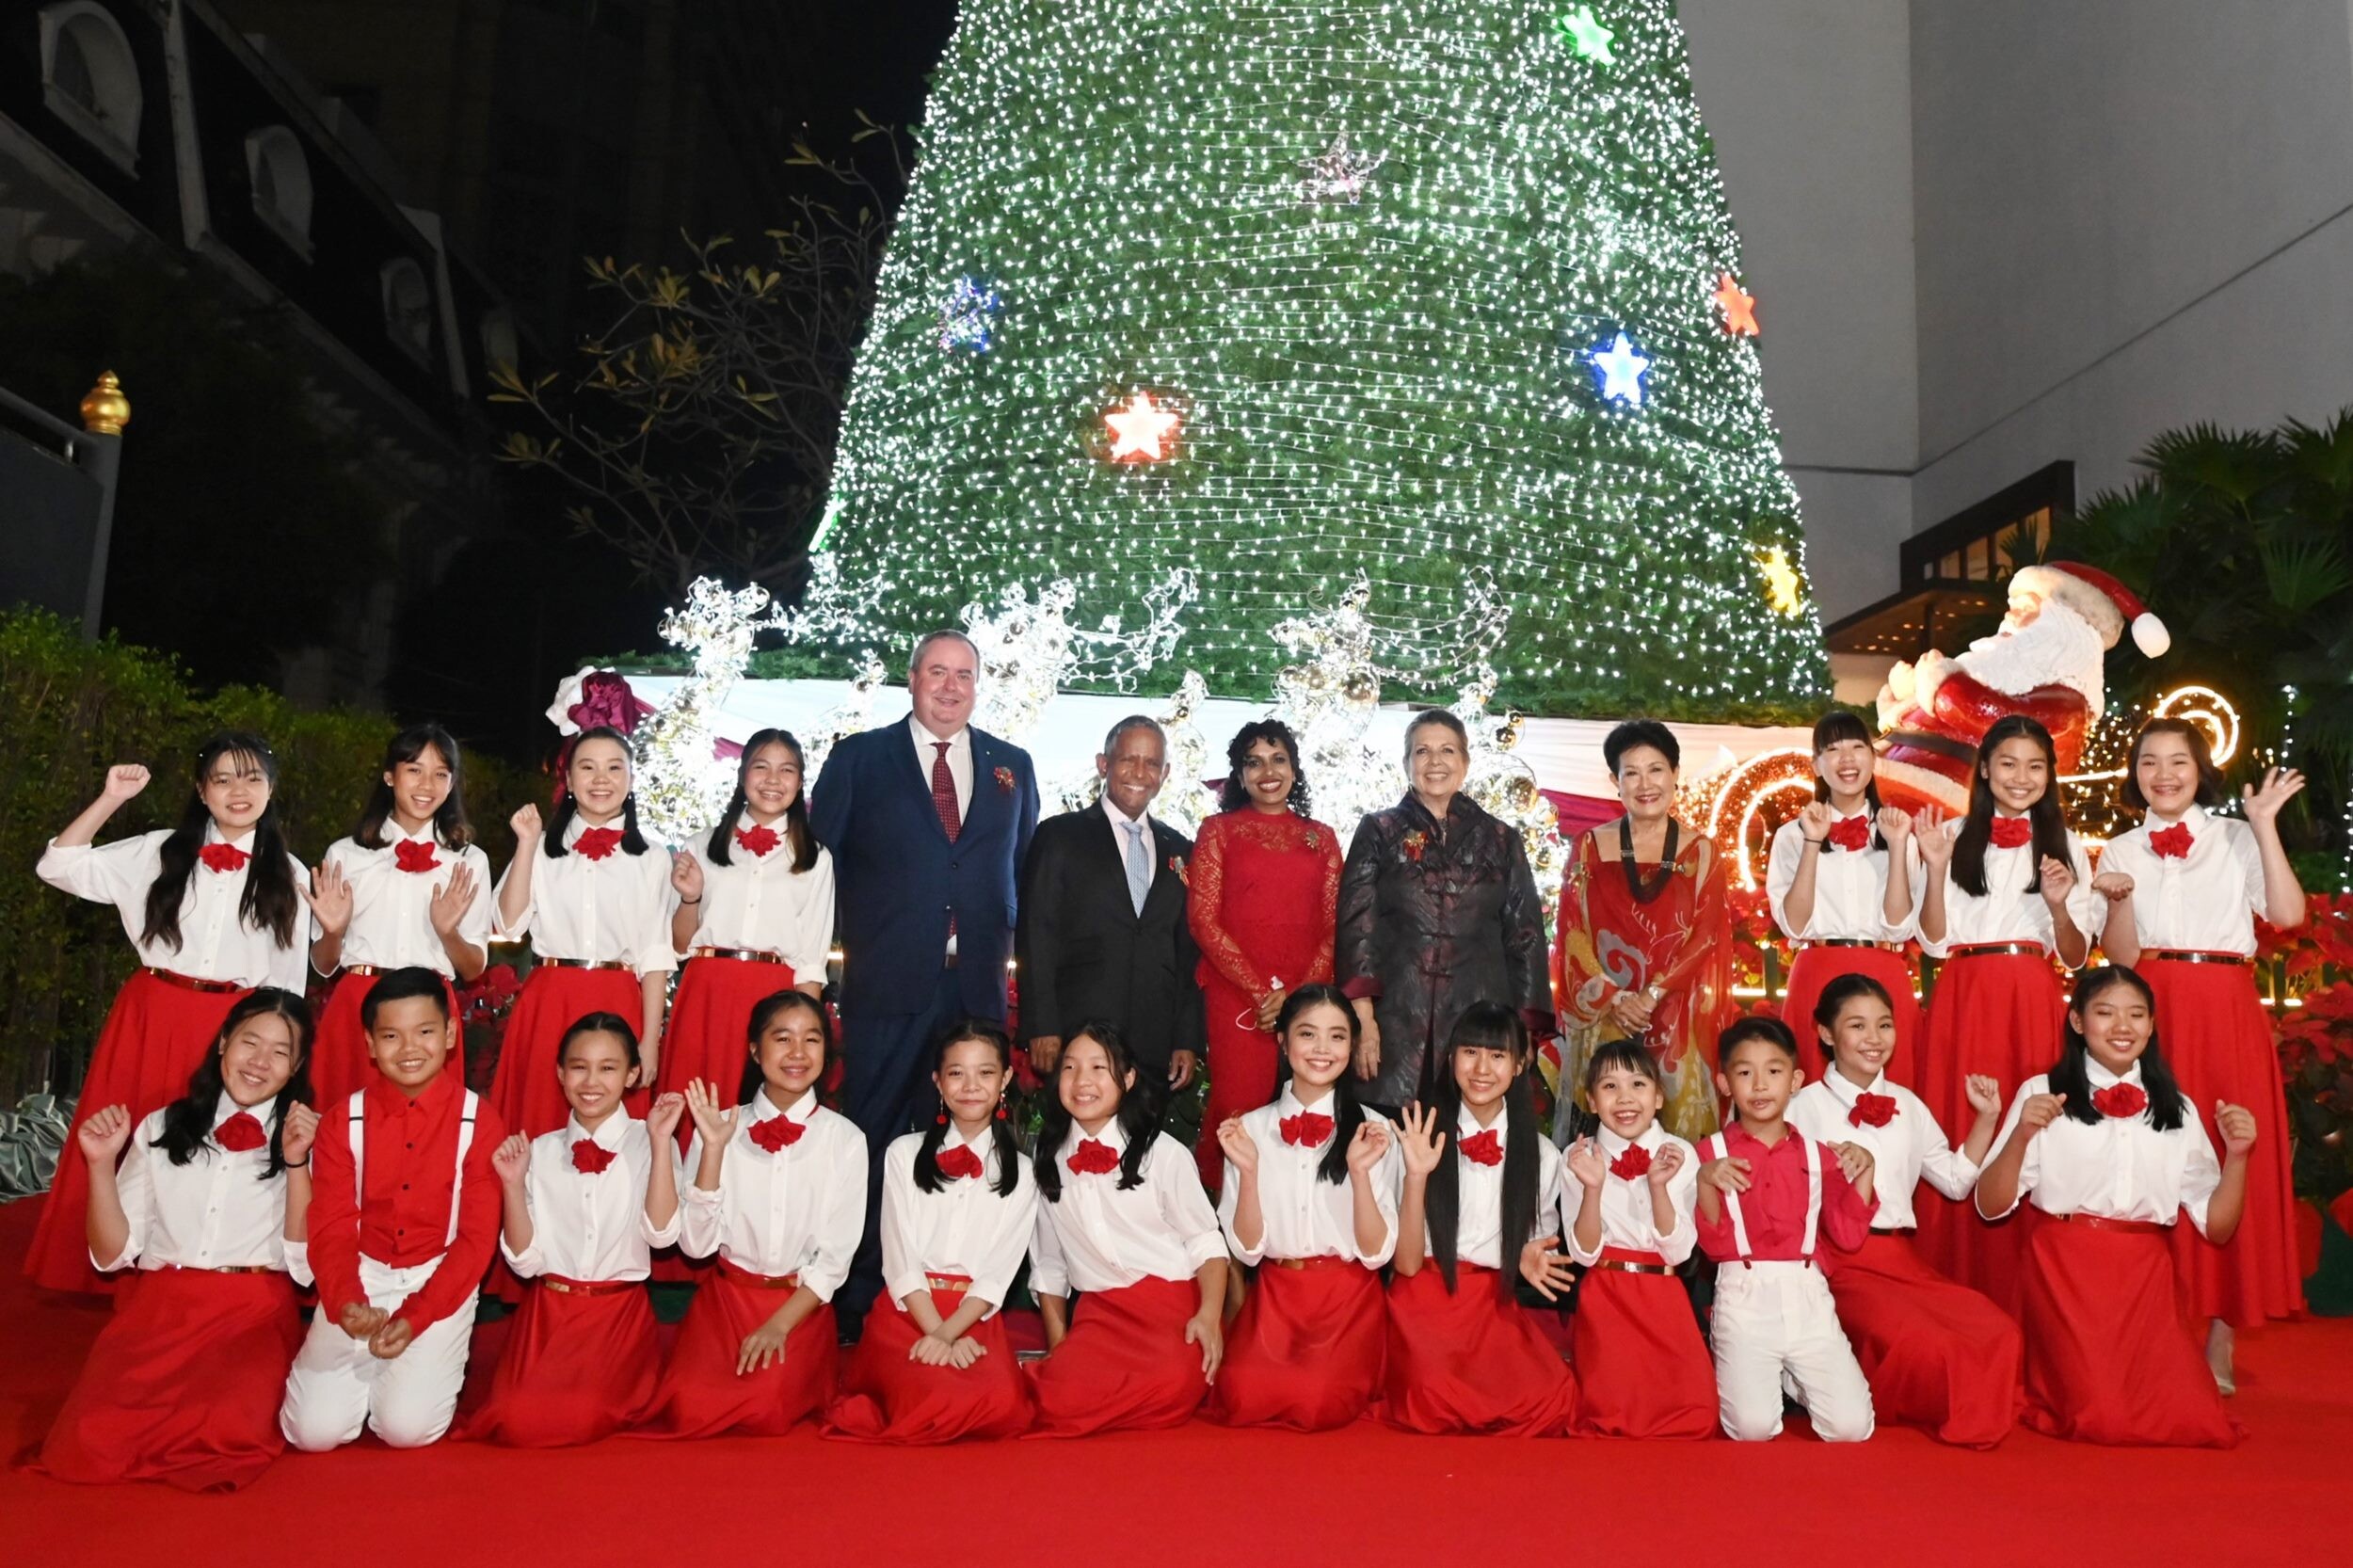 โรงแรมอนันตรา สยาม กรุงเทพ จัดงานฉลองคริสต์มาสการกุศล ปี 2564 เพื่อช่วยเหลือเด็กด้อยโอกาส